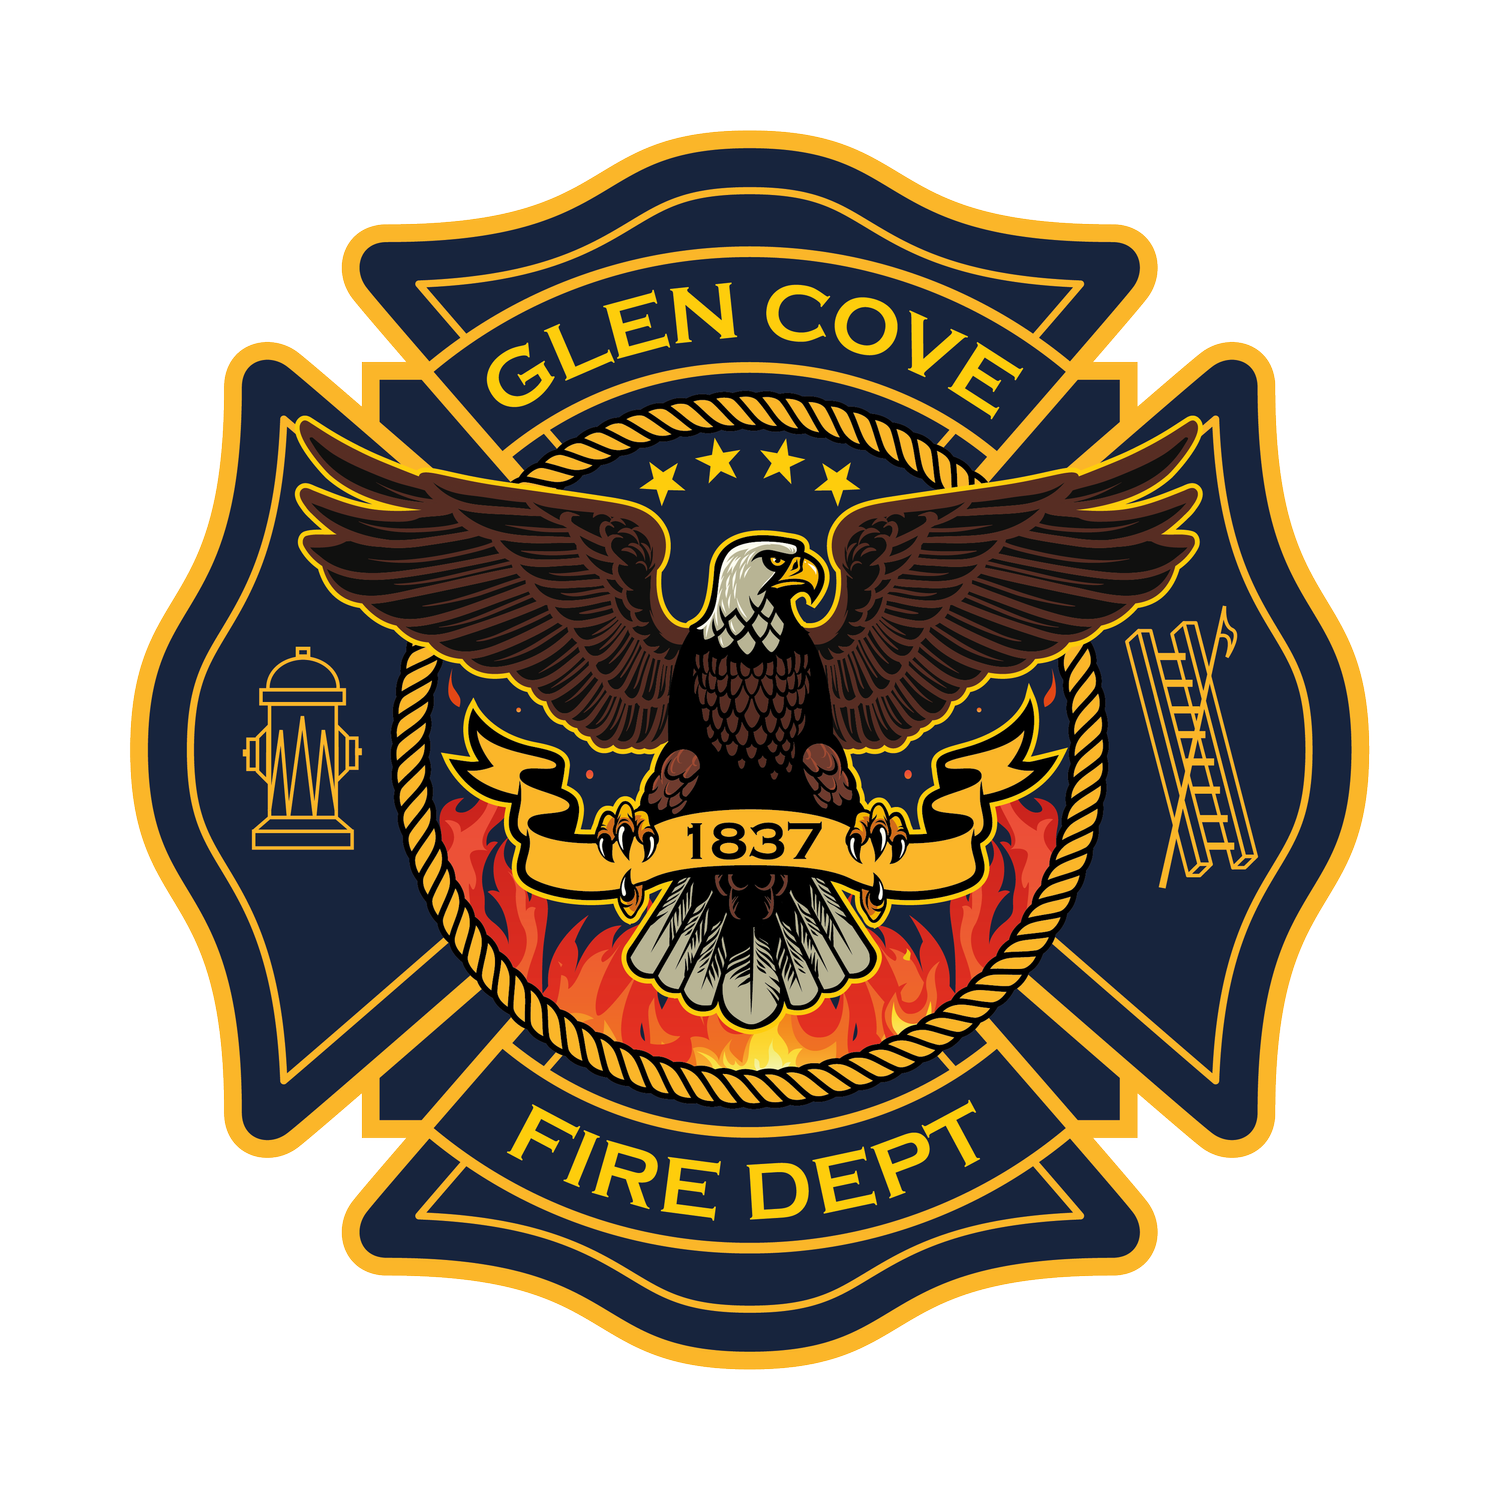 The City of Glen Cove Volunteer Fire Department